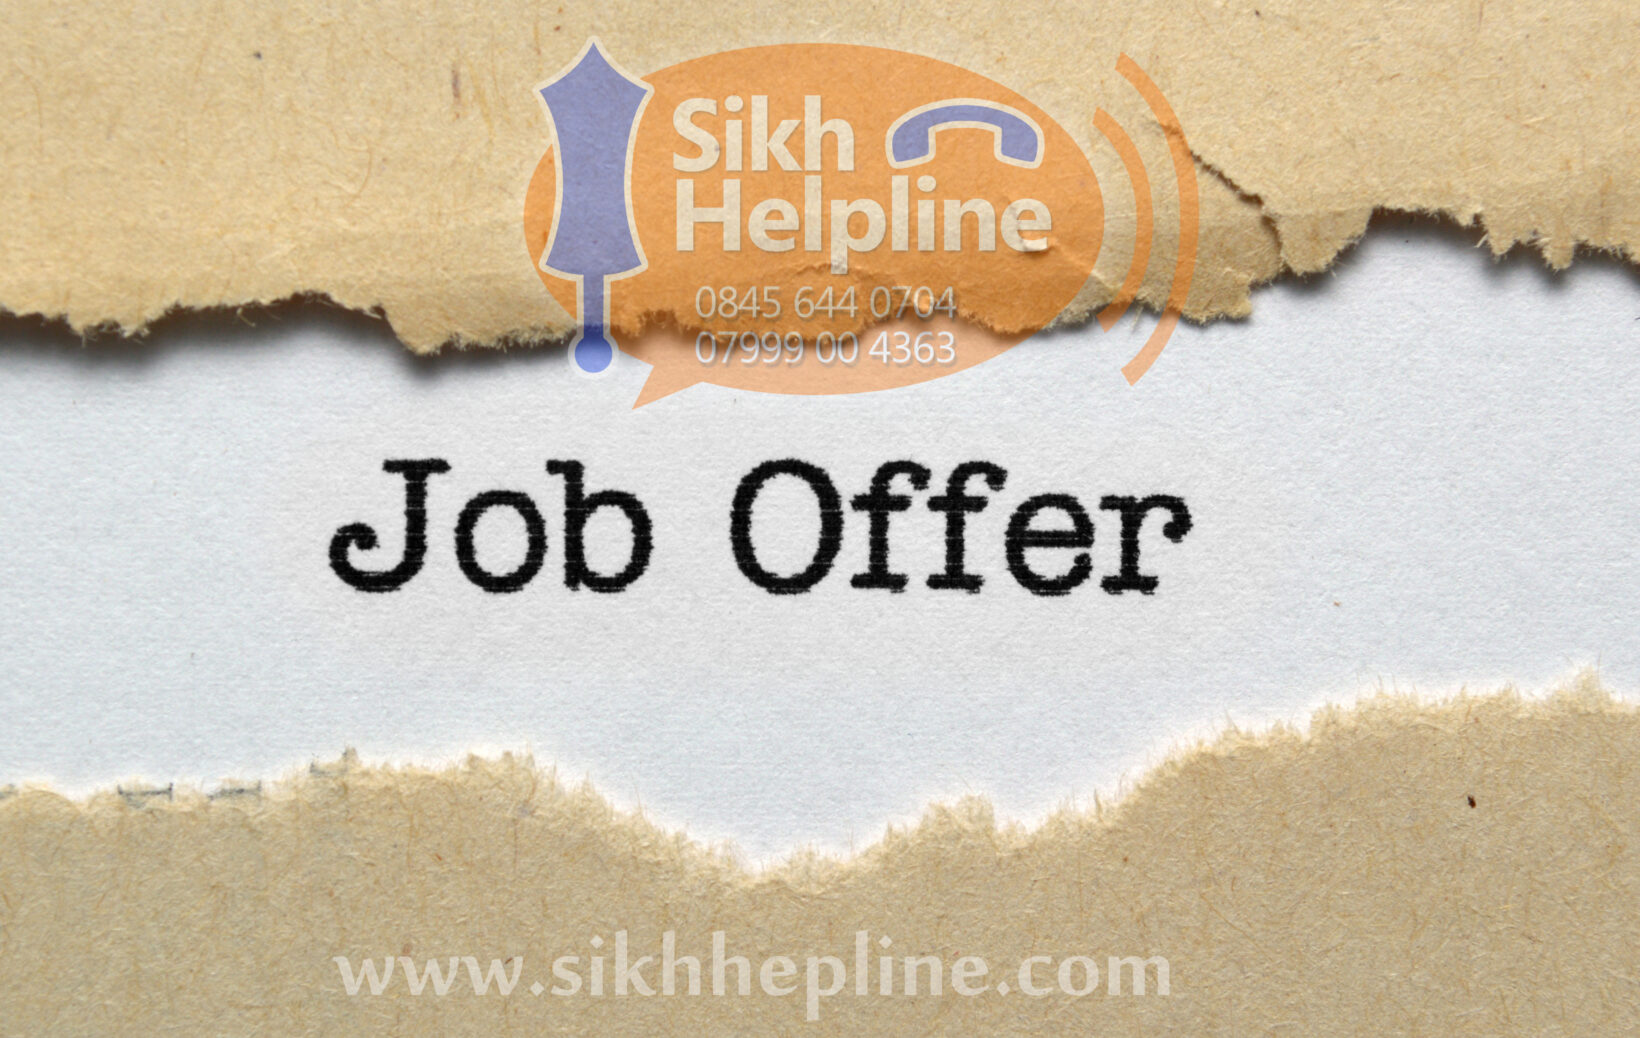 Job offer Sikh Helpline